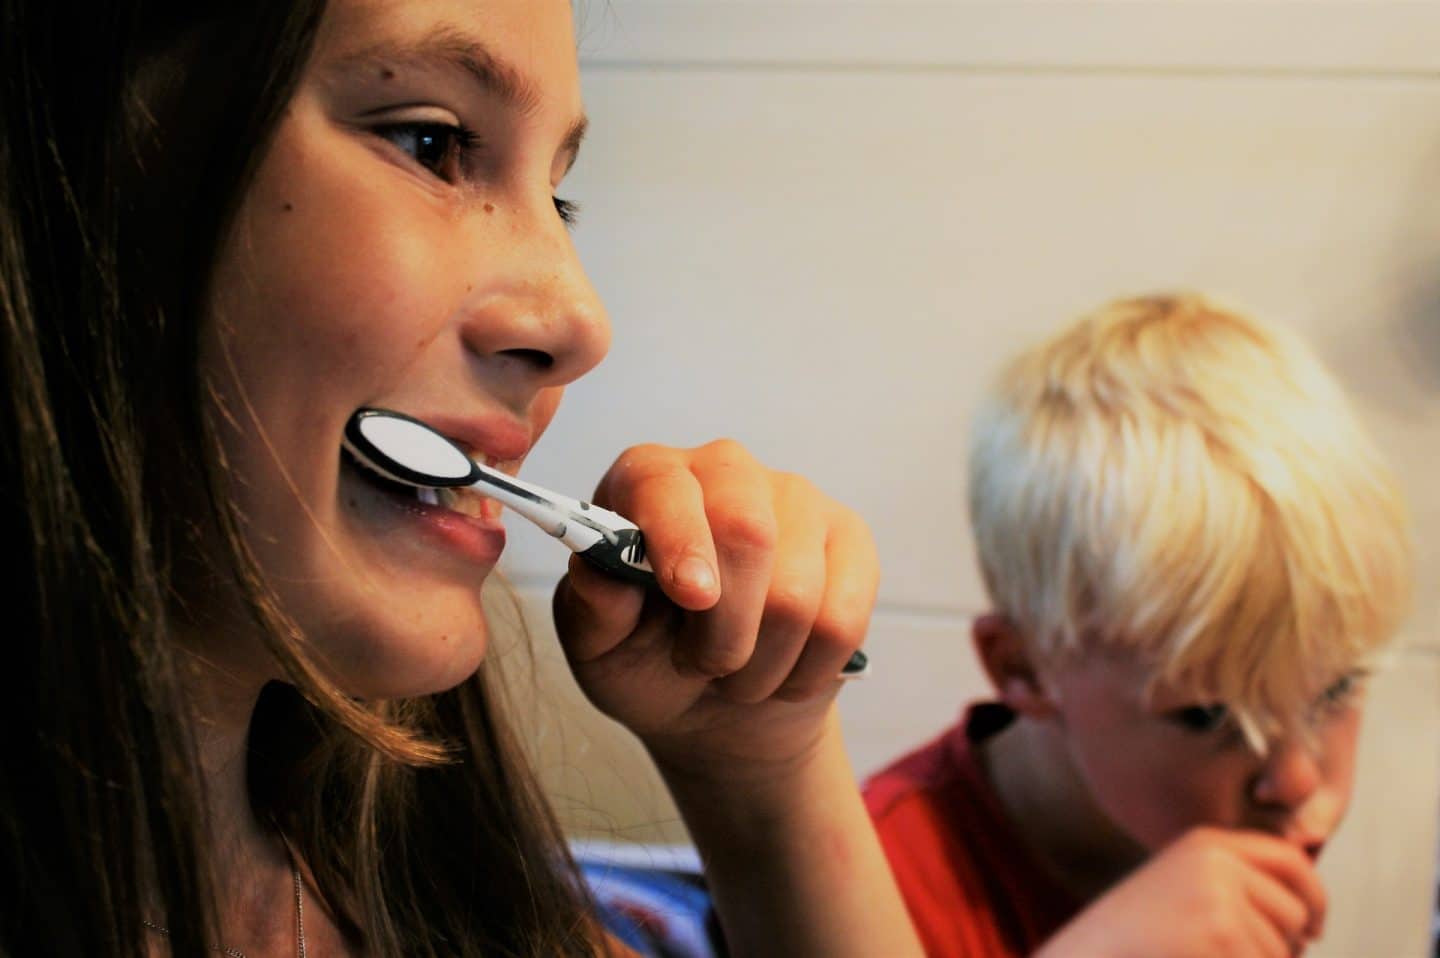 Usar bien la pasta de dientes en el cepillado de los niños: Flúor ¿sí o no?